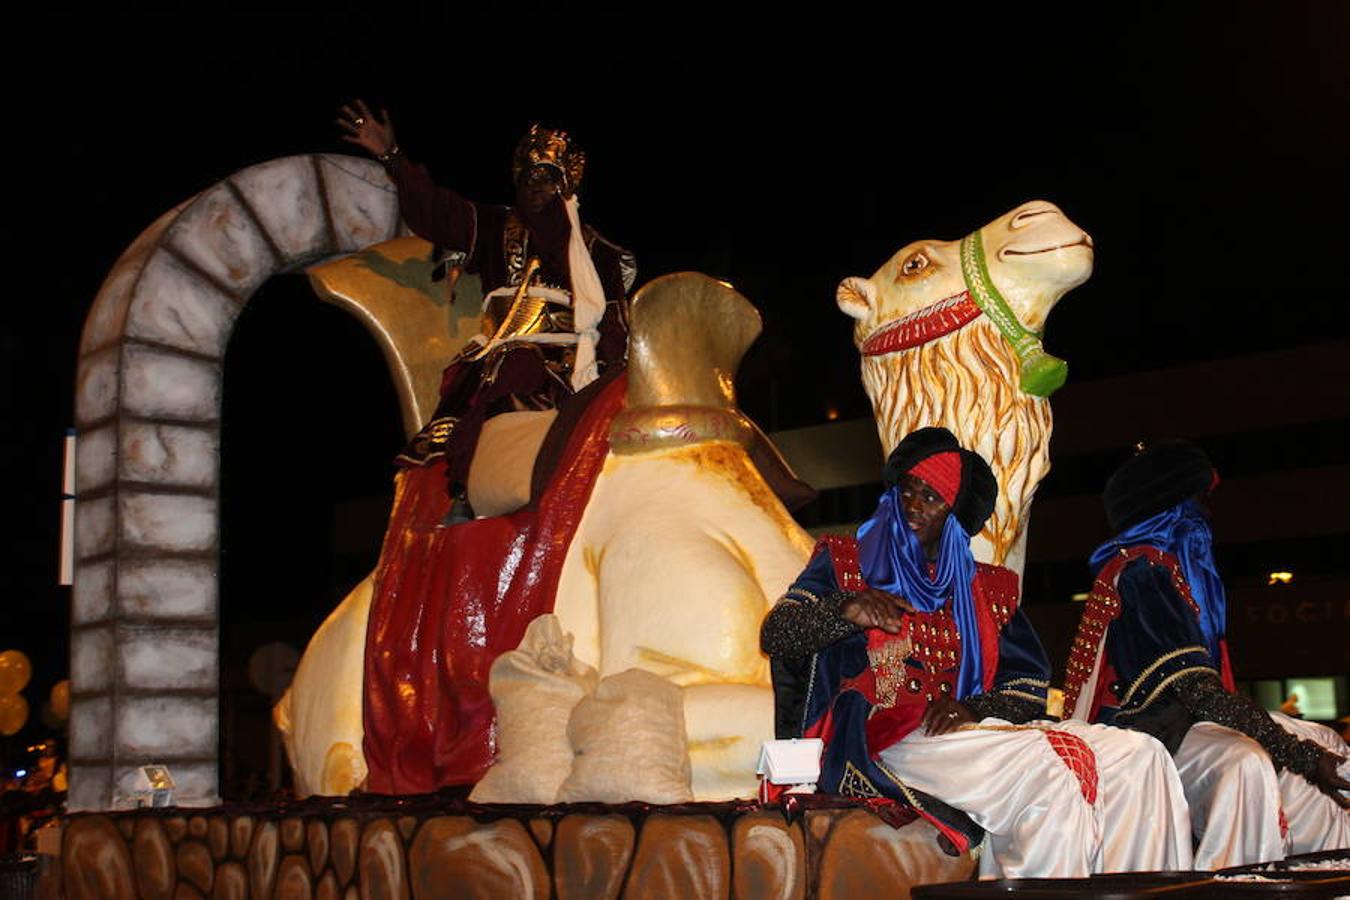 Miles de personas asistieron en la tarde noche de hoy a la Cabalgata de Reyes que desde las siete de la tarde y hasta pasadas las nueve de la noche recorrió el centro de El Ejido. Más de mil personas pusieron el color, la alegría, la magia y la música para que el numeroso público disfrutara.